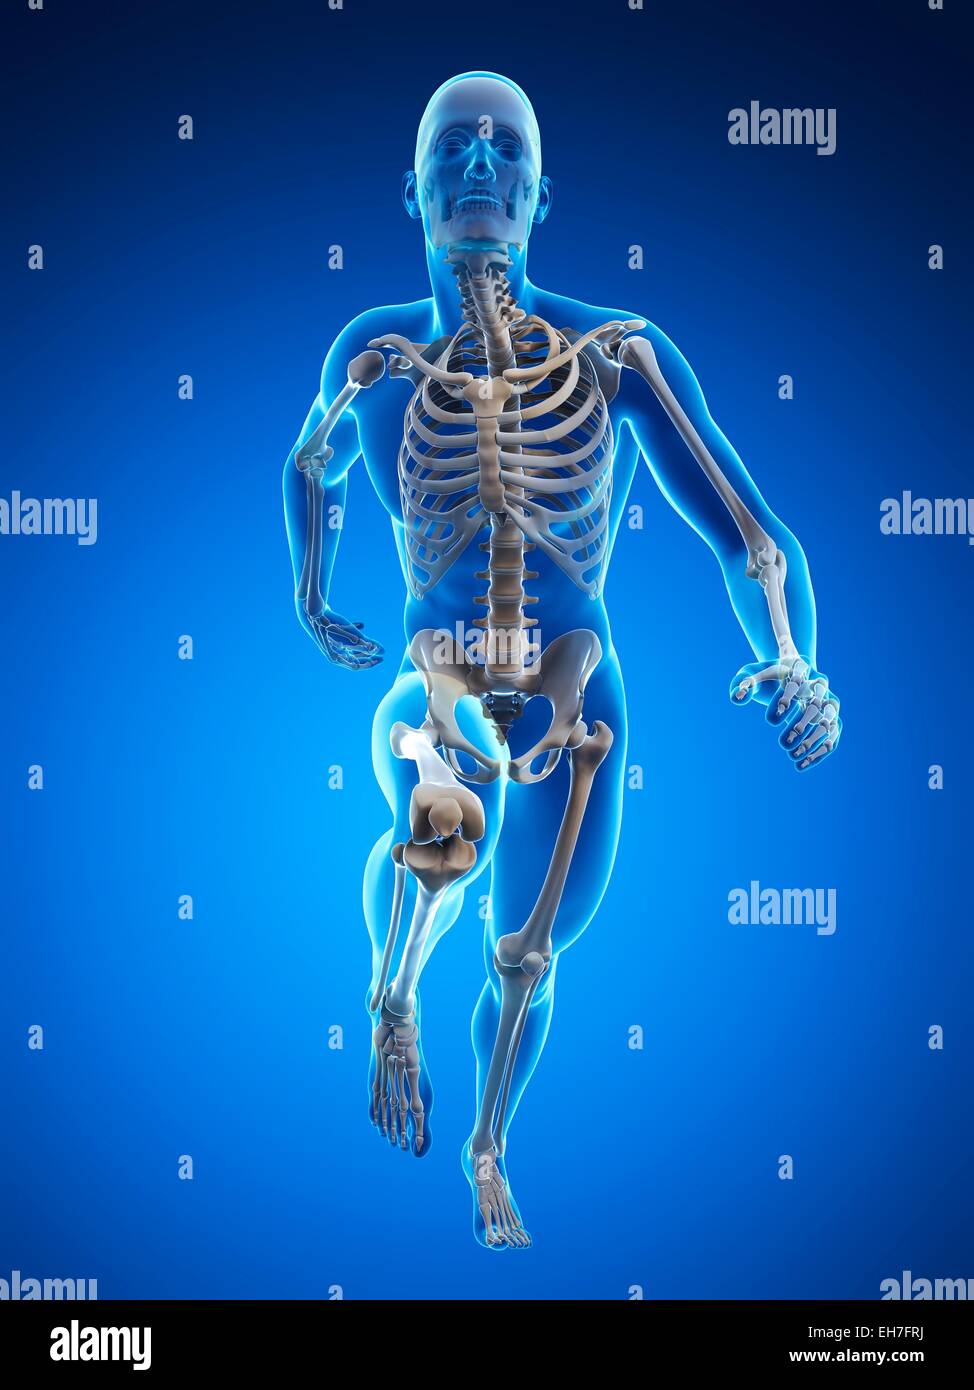 Skeletal system of runner, artwork Stock Photo - Alamy